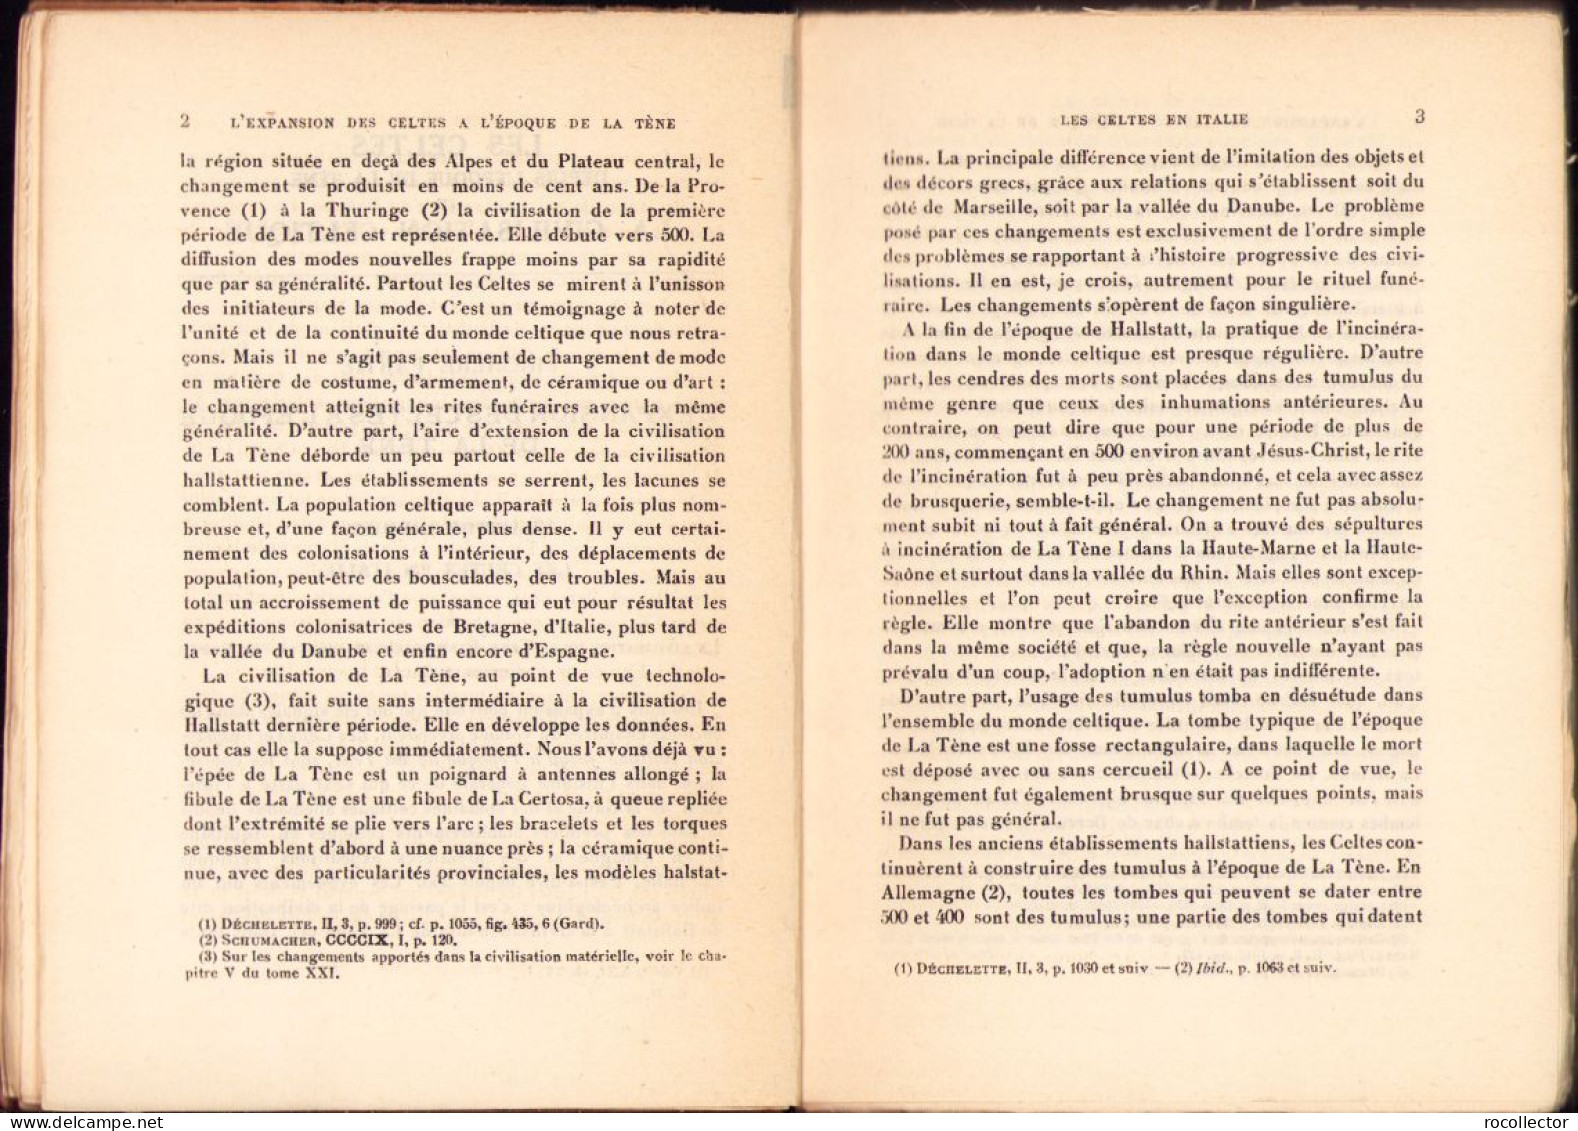 Les Celtes Depuis L’epoque De La Tene Et La Civilisation Celtique Par Henri Hubert, 1932 642SP - Alte Bücher